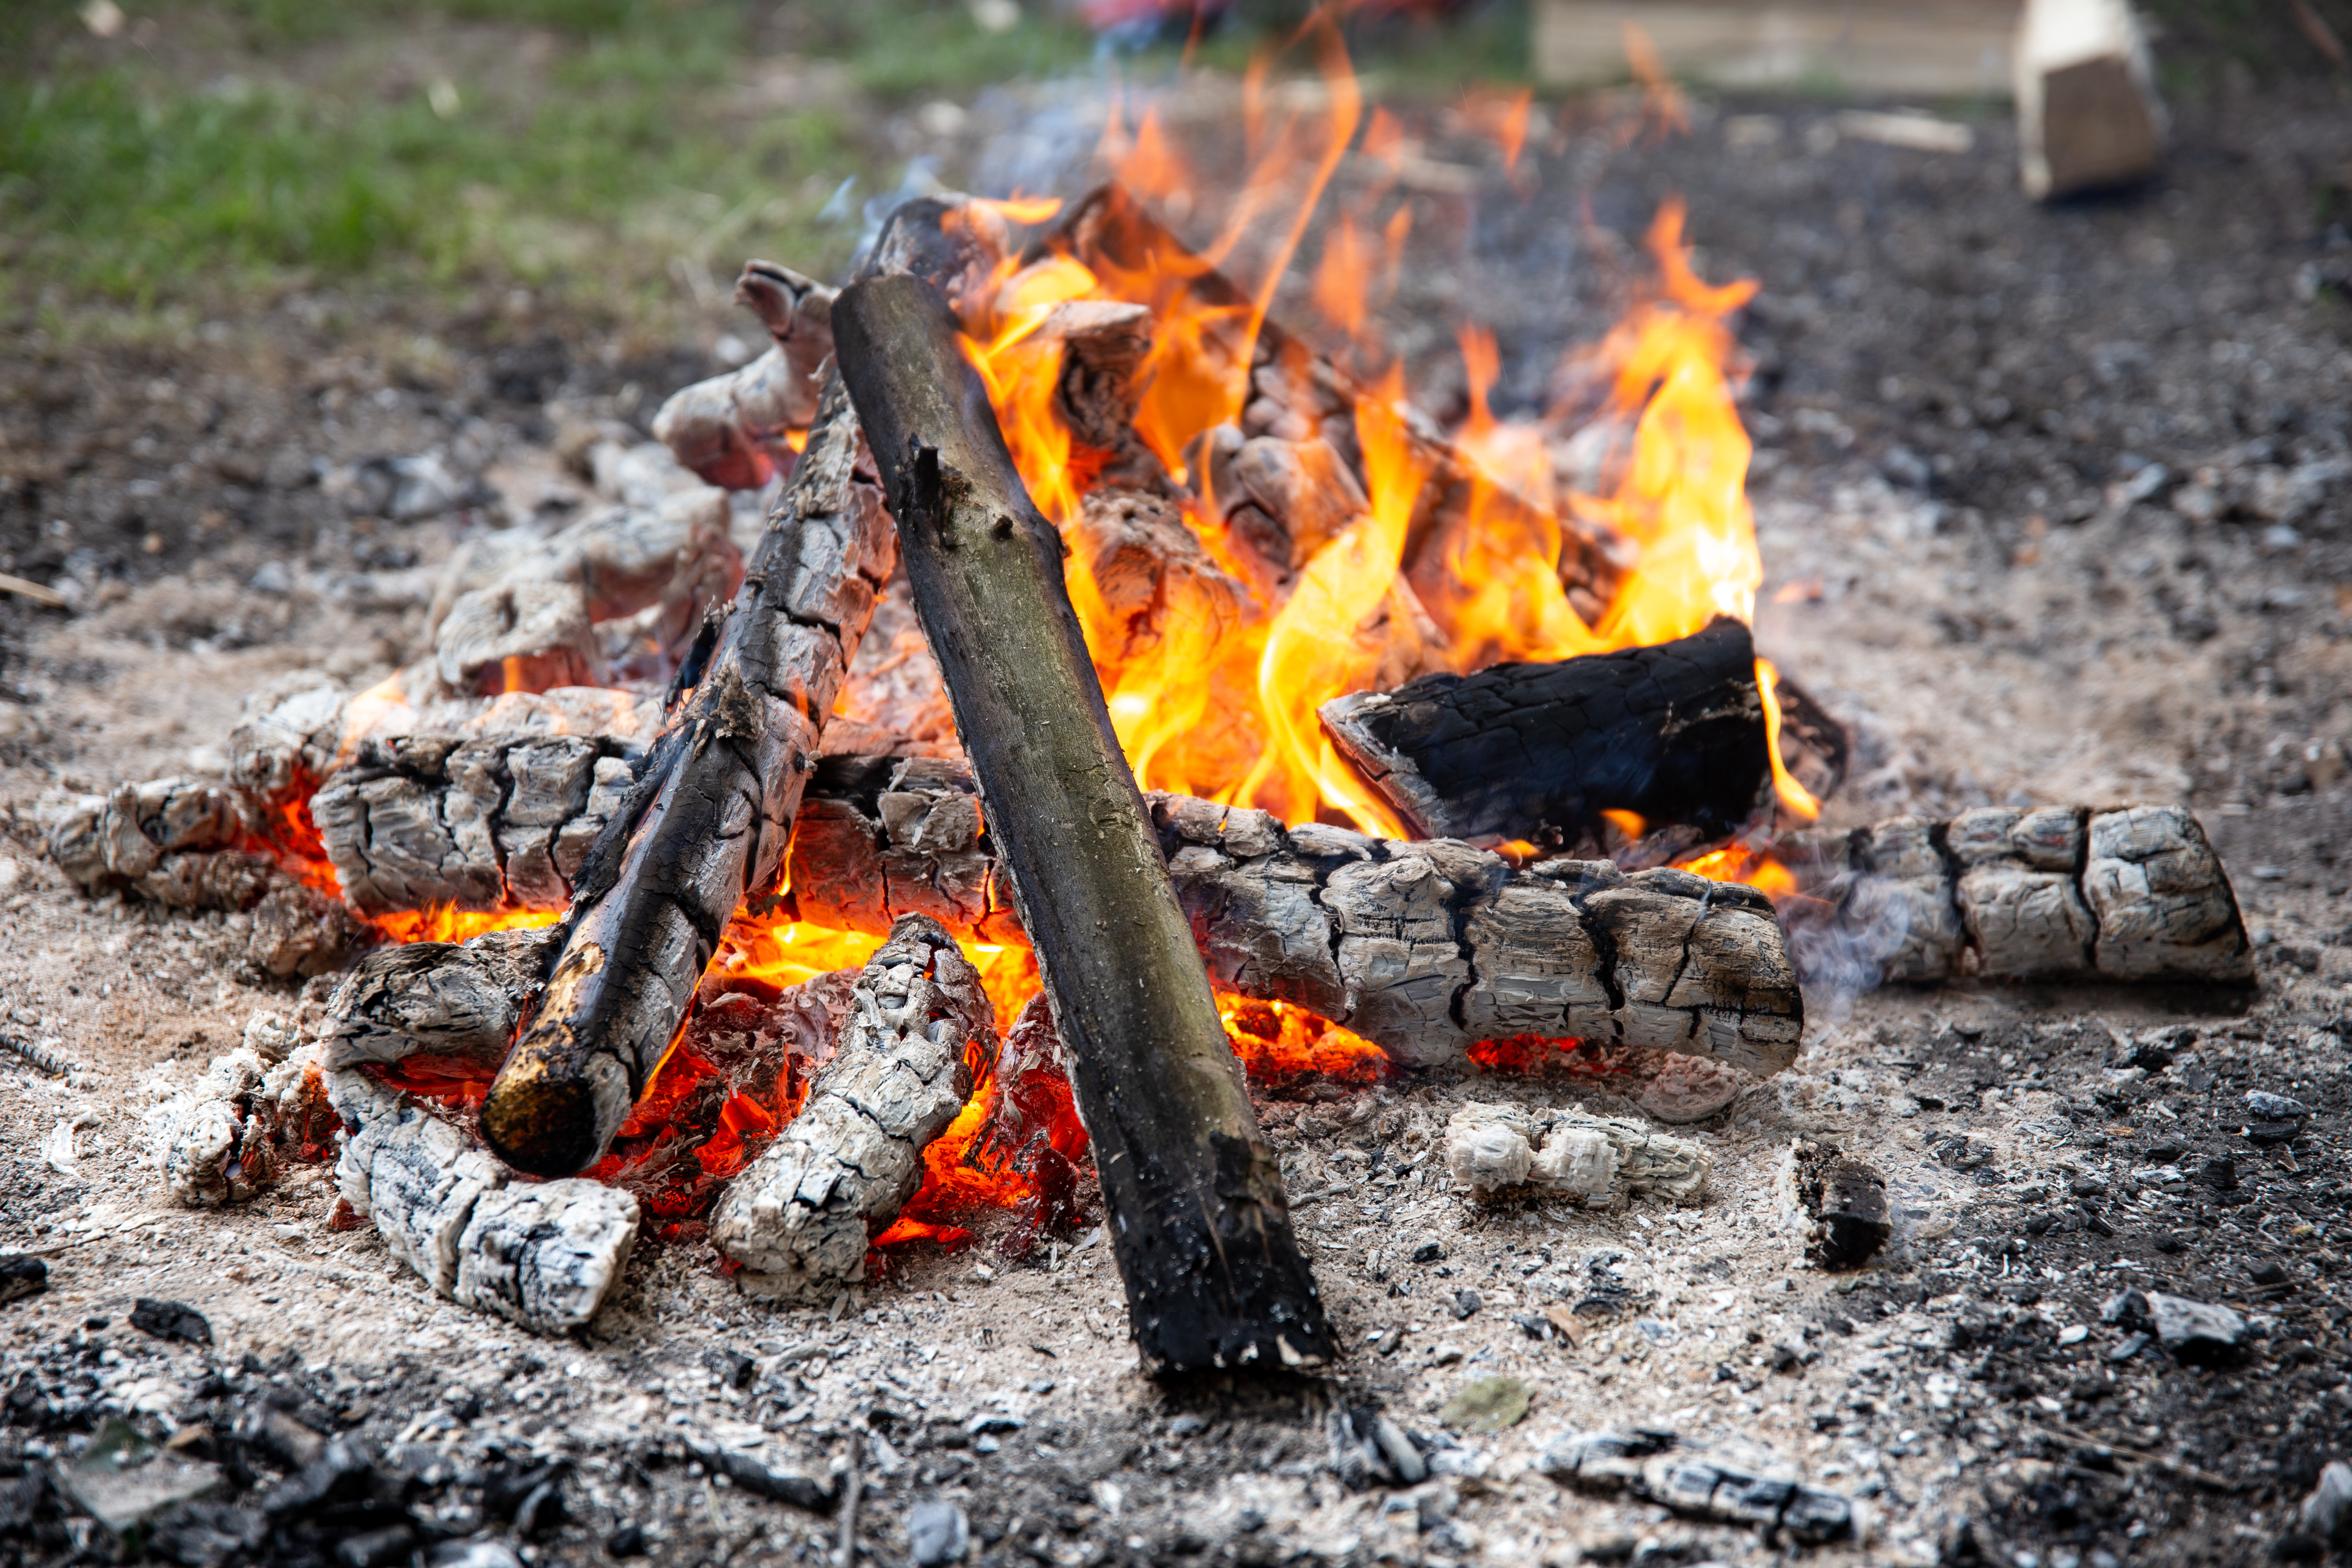 Житель Петрозаводска обгорел на отдыхе у костра